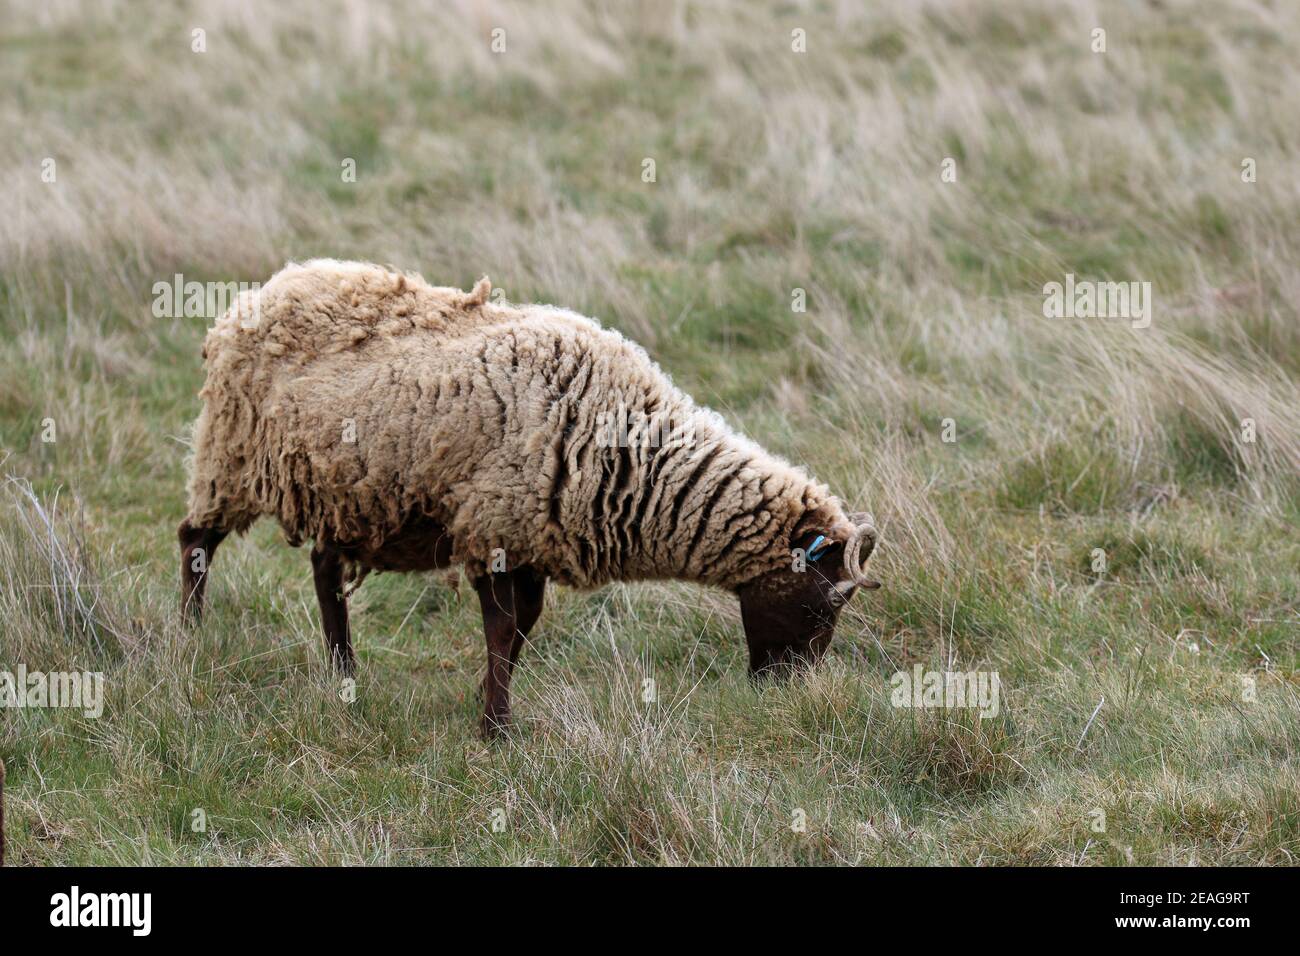 Manx Loaghtan Mutterschafe seltene Rasse Schafe mit einem dunkelbraunen Kopf und Beine, helleres braunes Fell und gewellte Hörner grasen auf einer rauen Wiese. Stockfoto